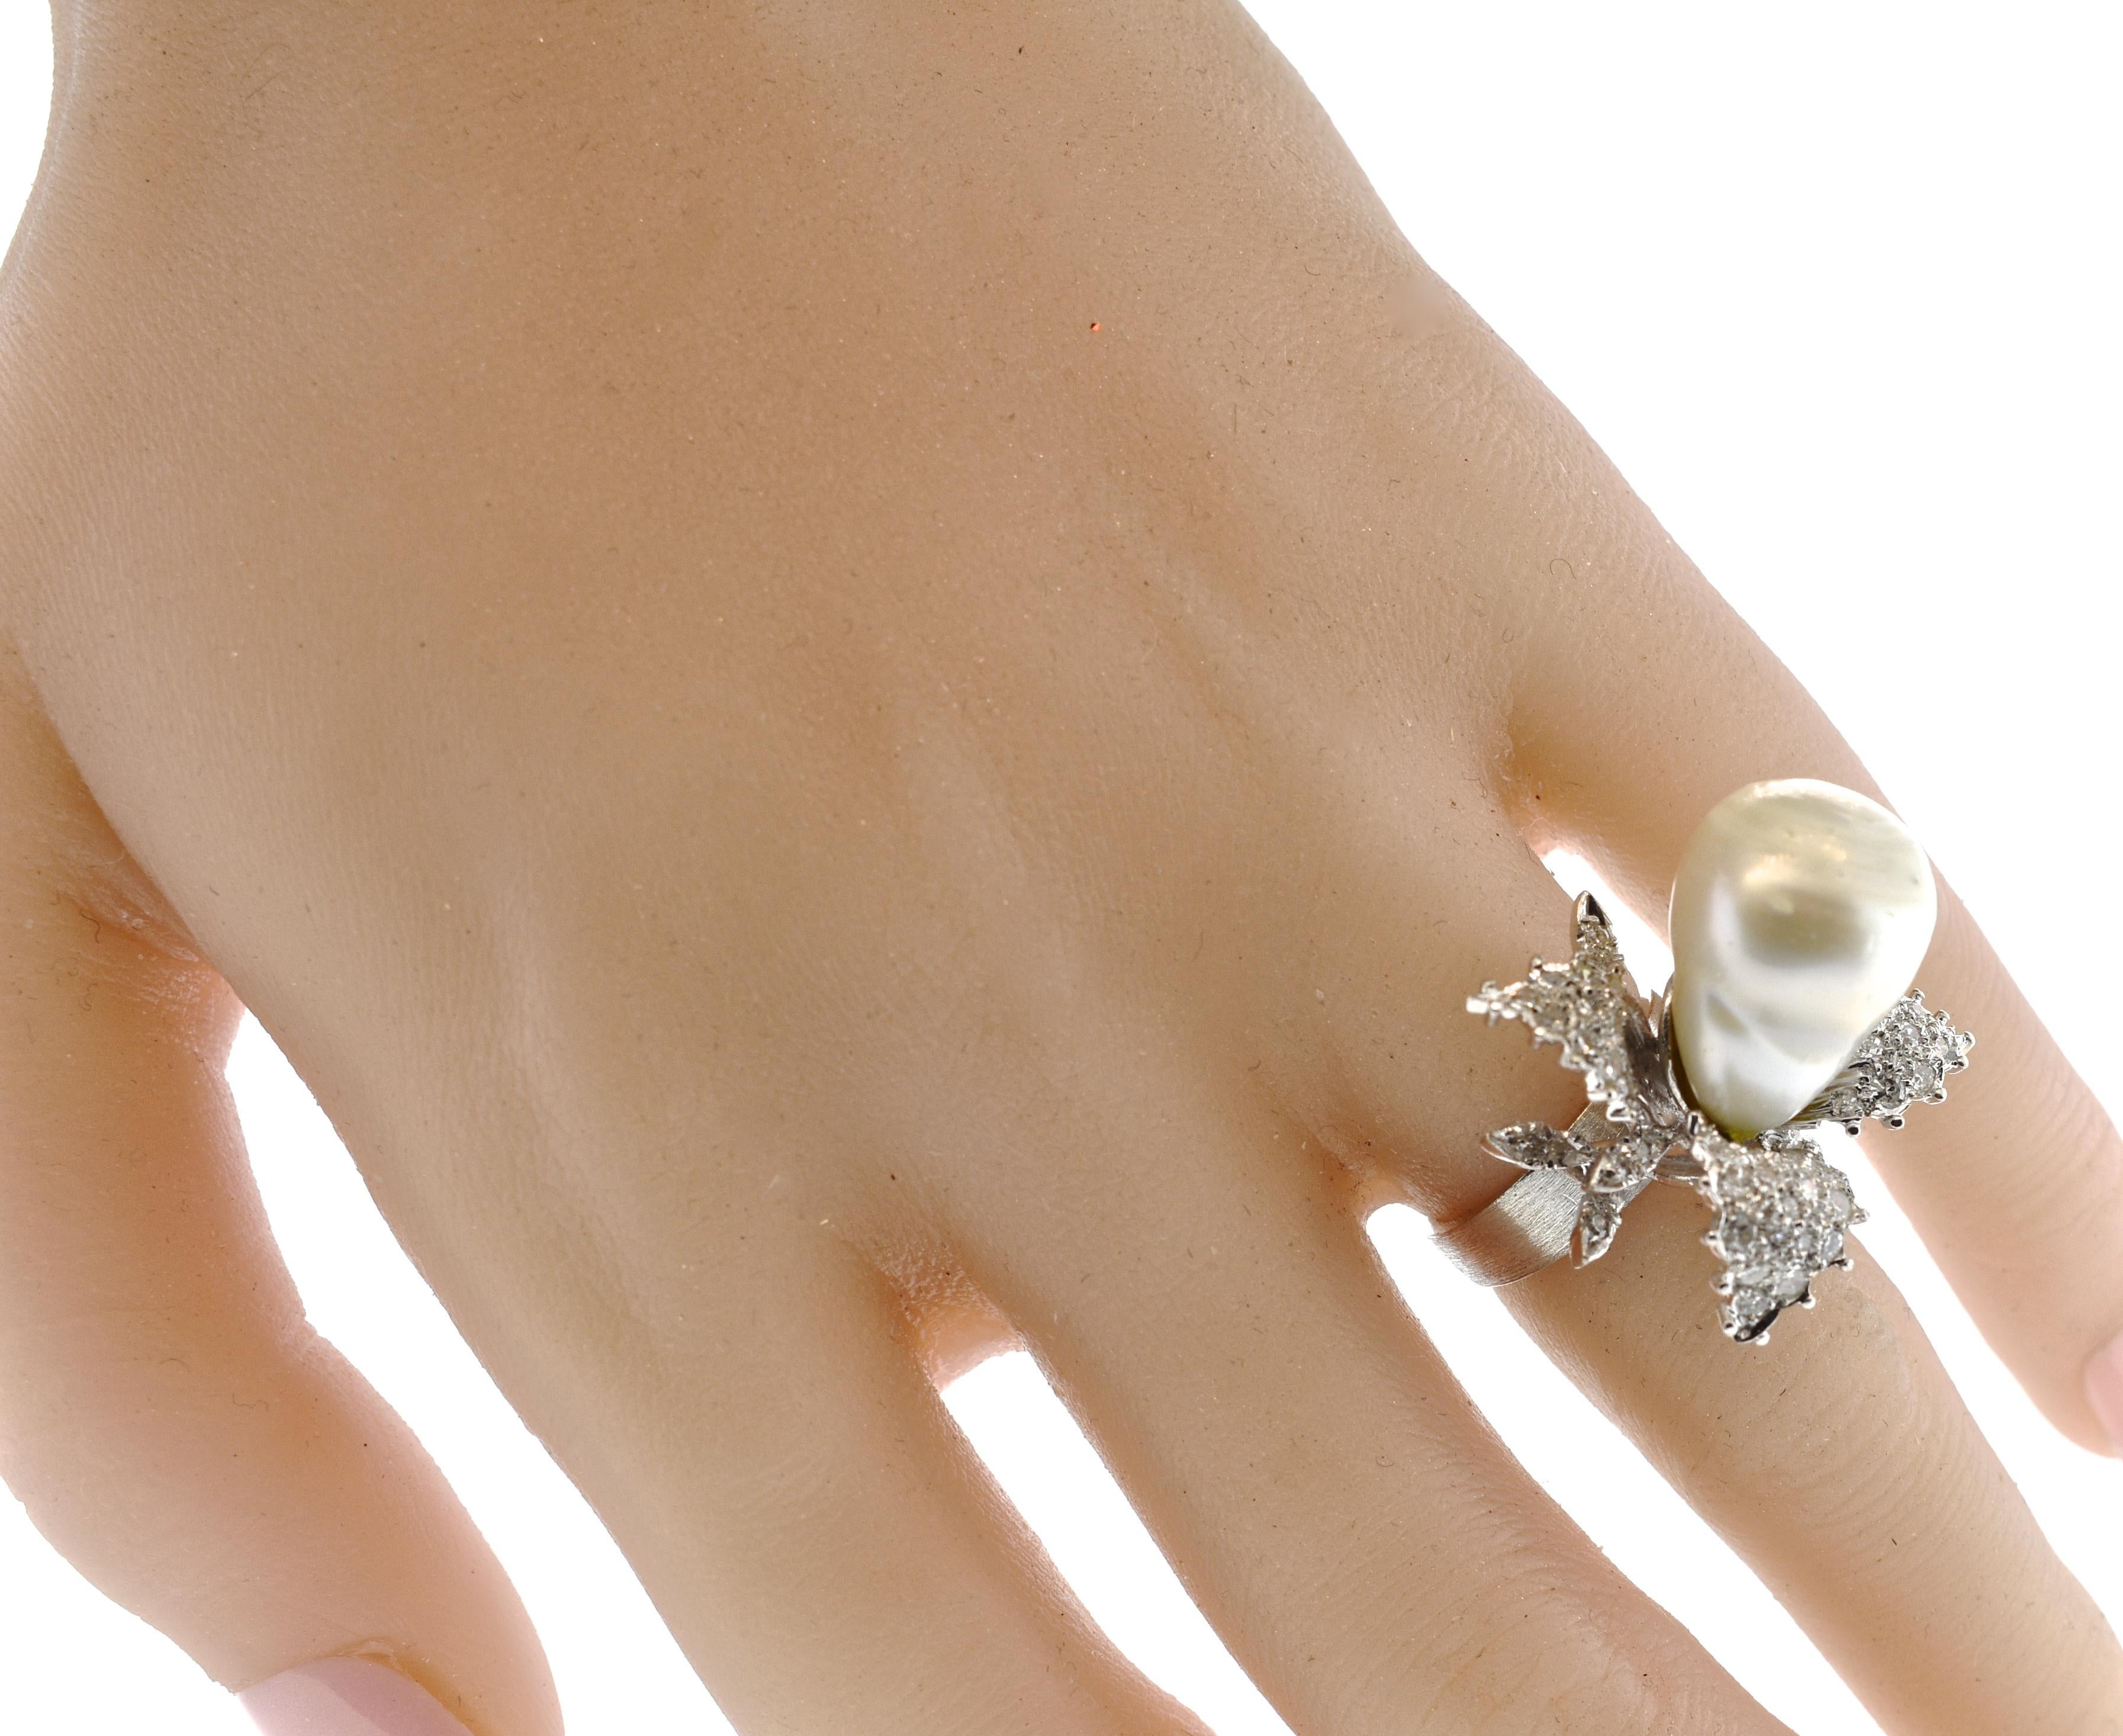 Brilliant Cut Vintage Diamond Ring centering a fine Baroque Pearl, circa 1960 For Sale